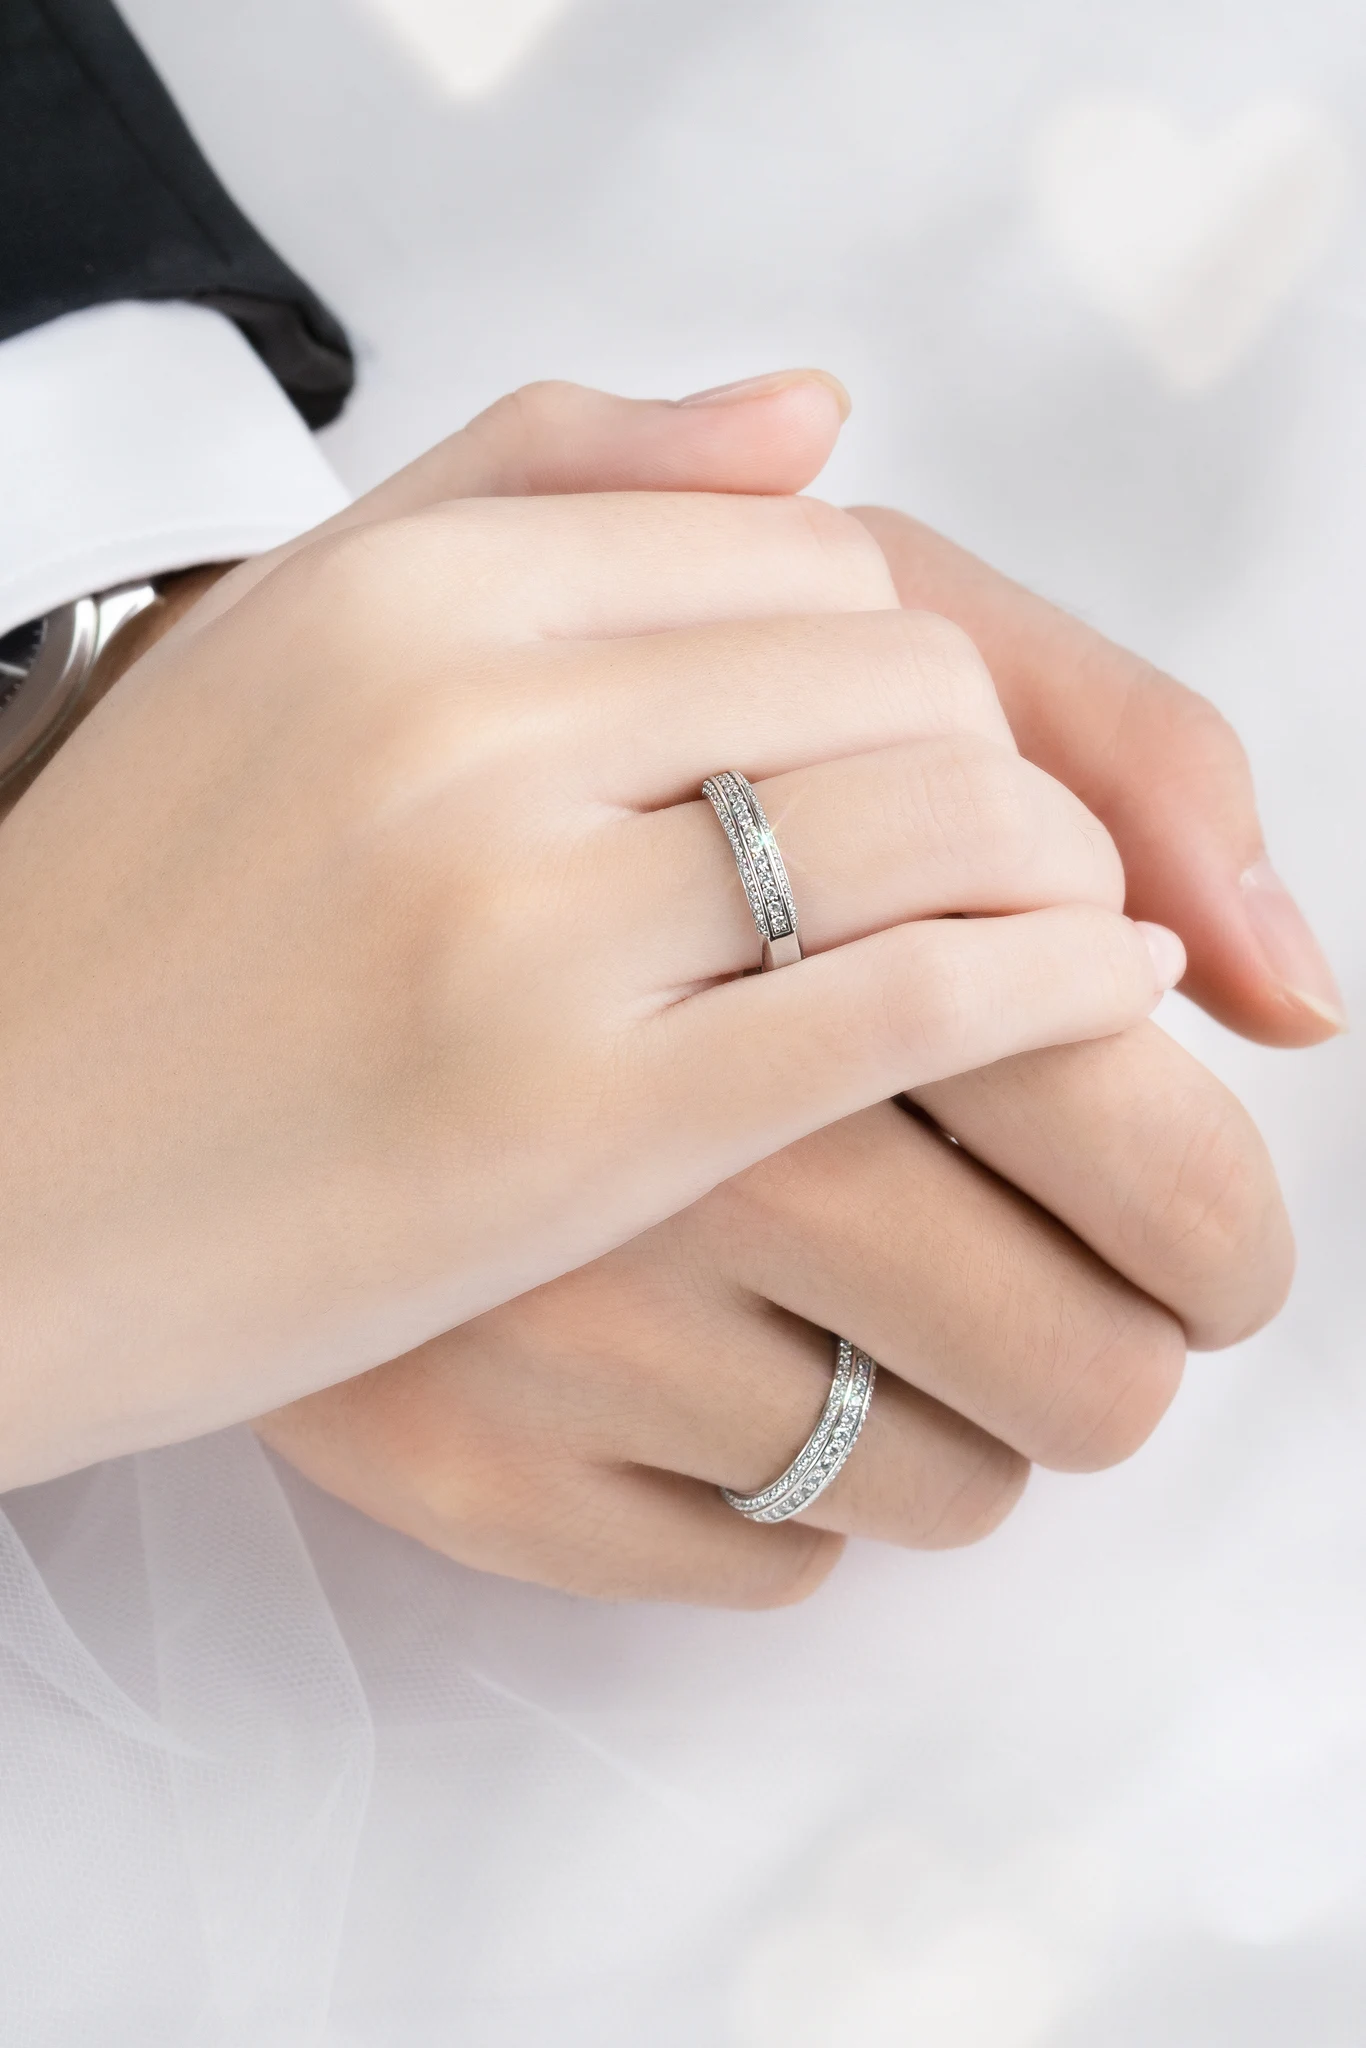 Xu hướng nhẫn cặp vàng trắng của cặp đôi trẻ hiện đại - Top 3 cặp nhẫn cưới vàng trắng tinh tế nhất